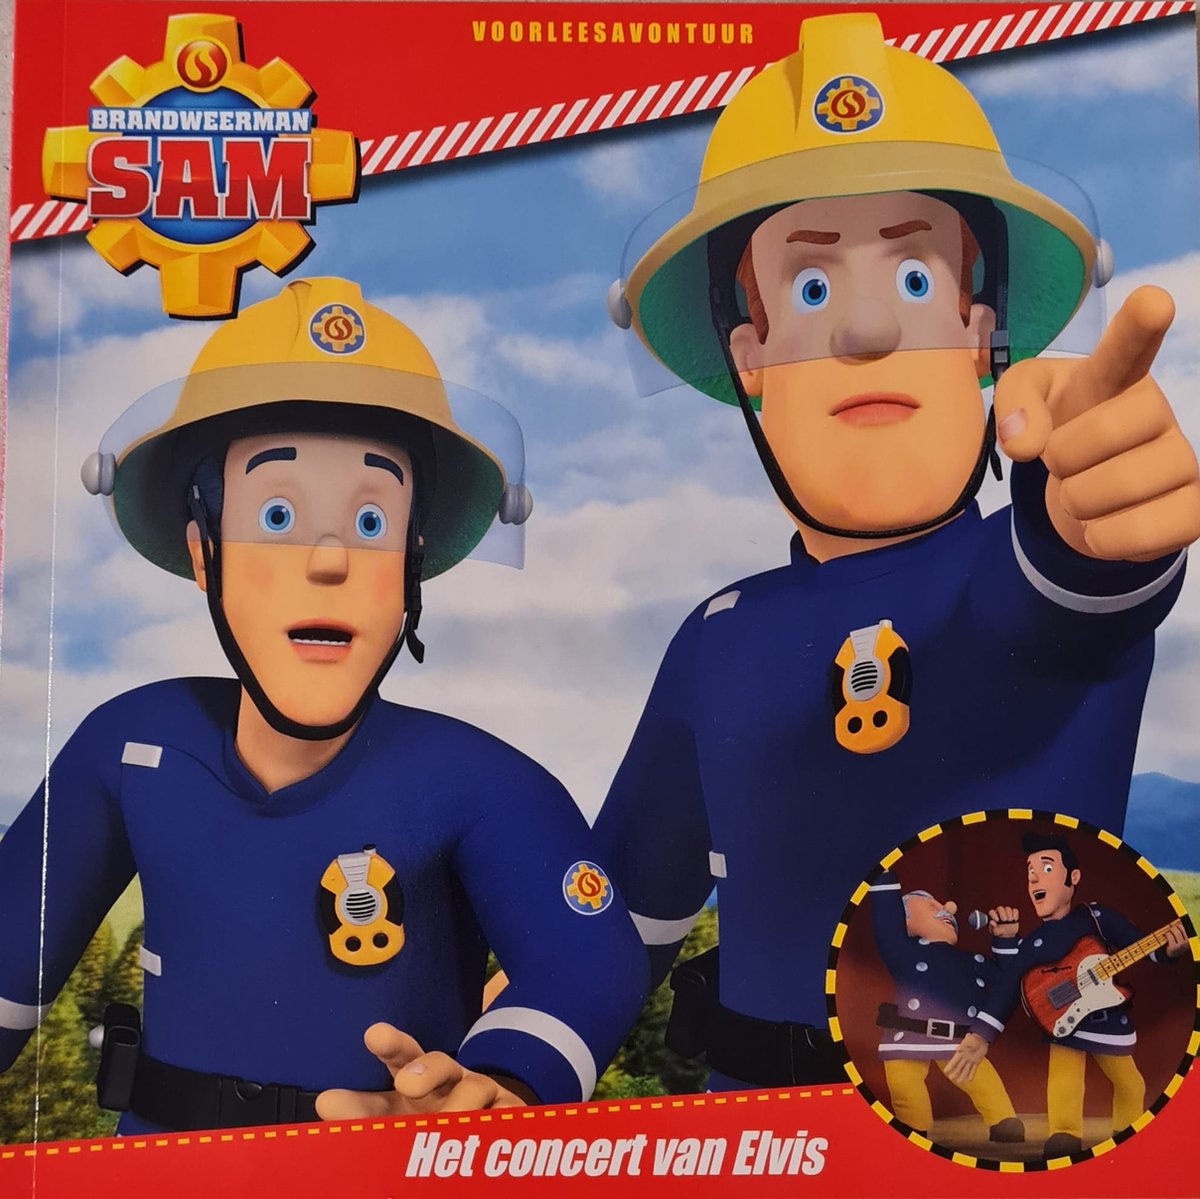 Brandweerman Sam - Het concert van Elvis